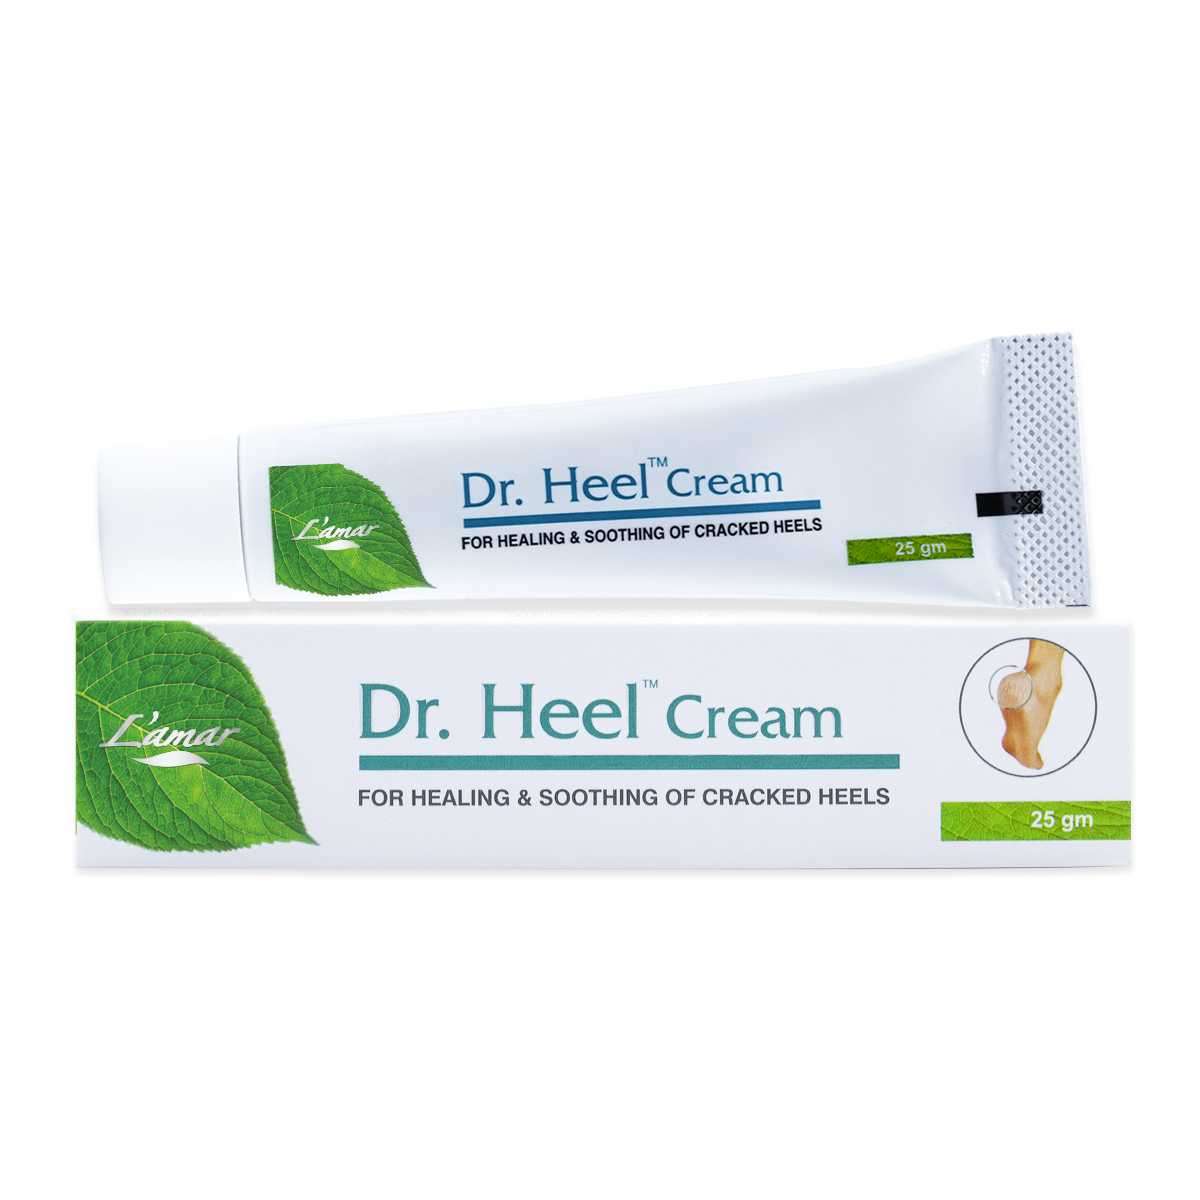 DR. HEEL CREAM 25 GM - cracked heels cream